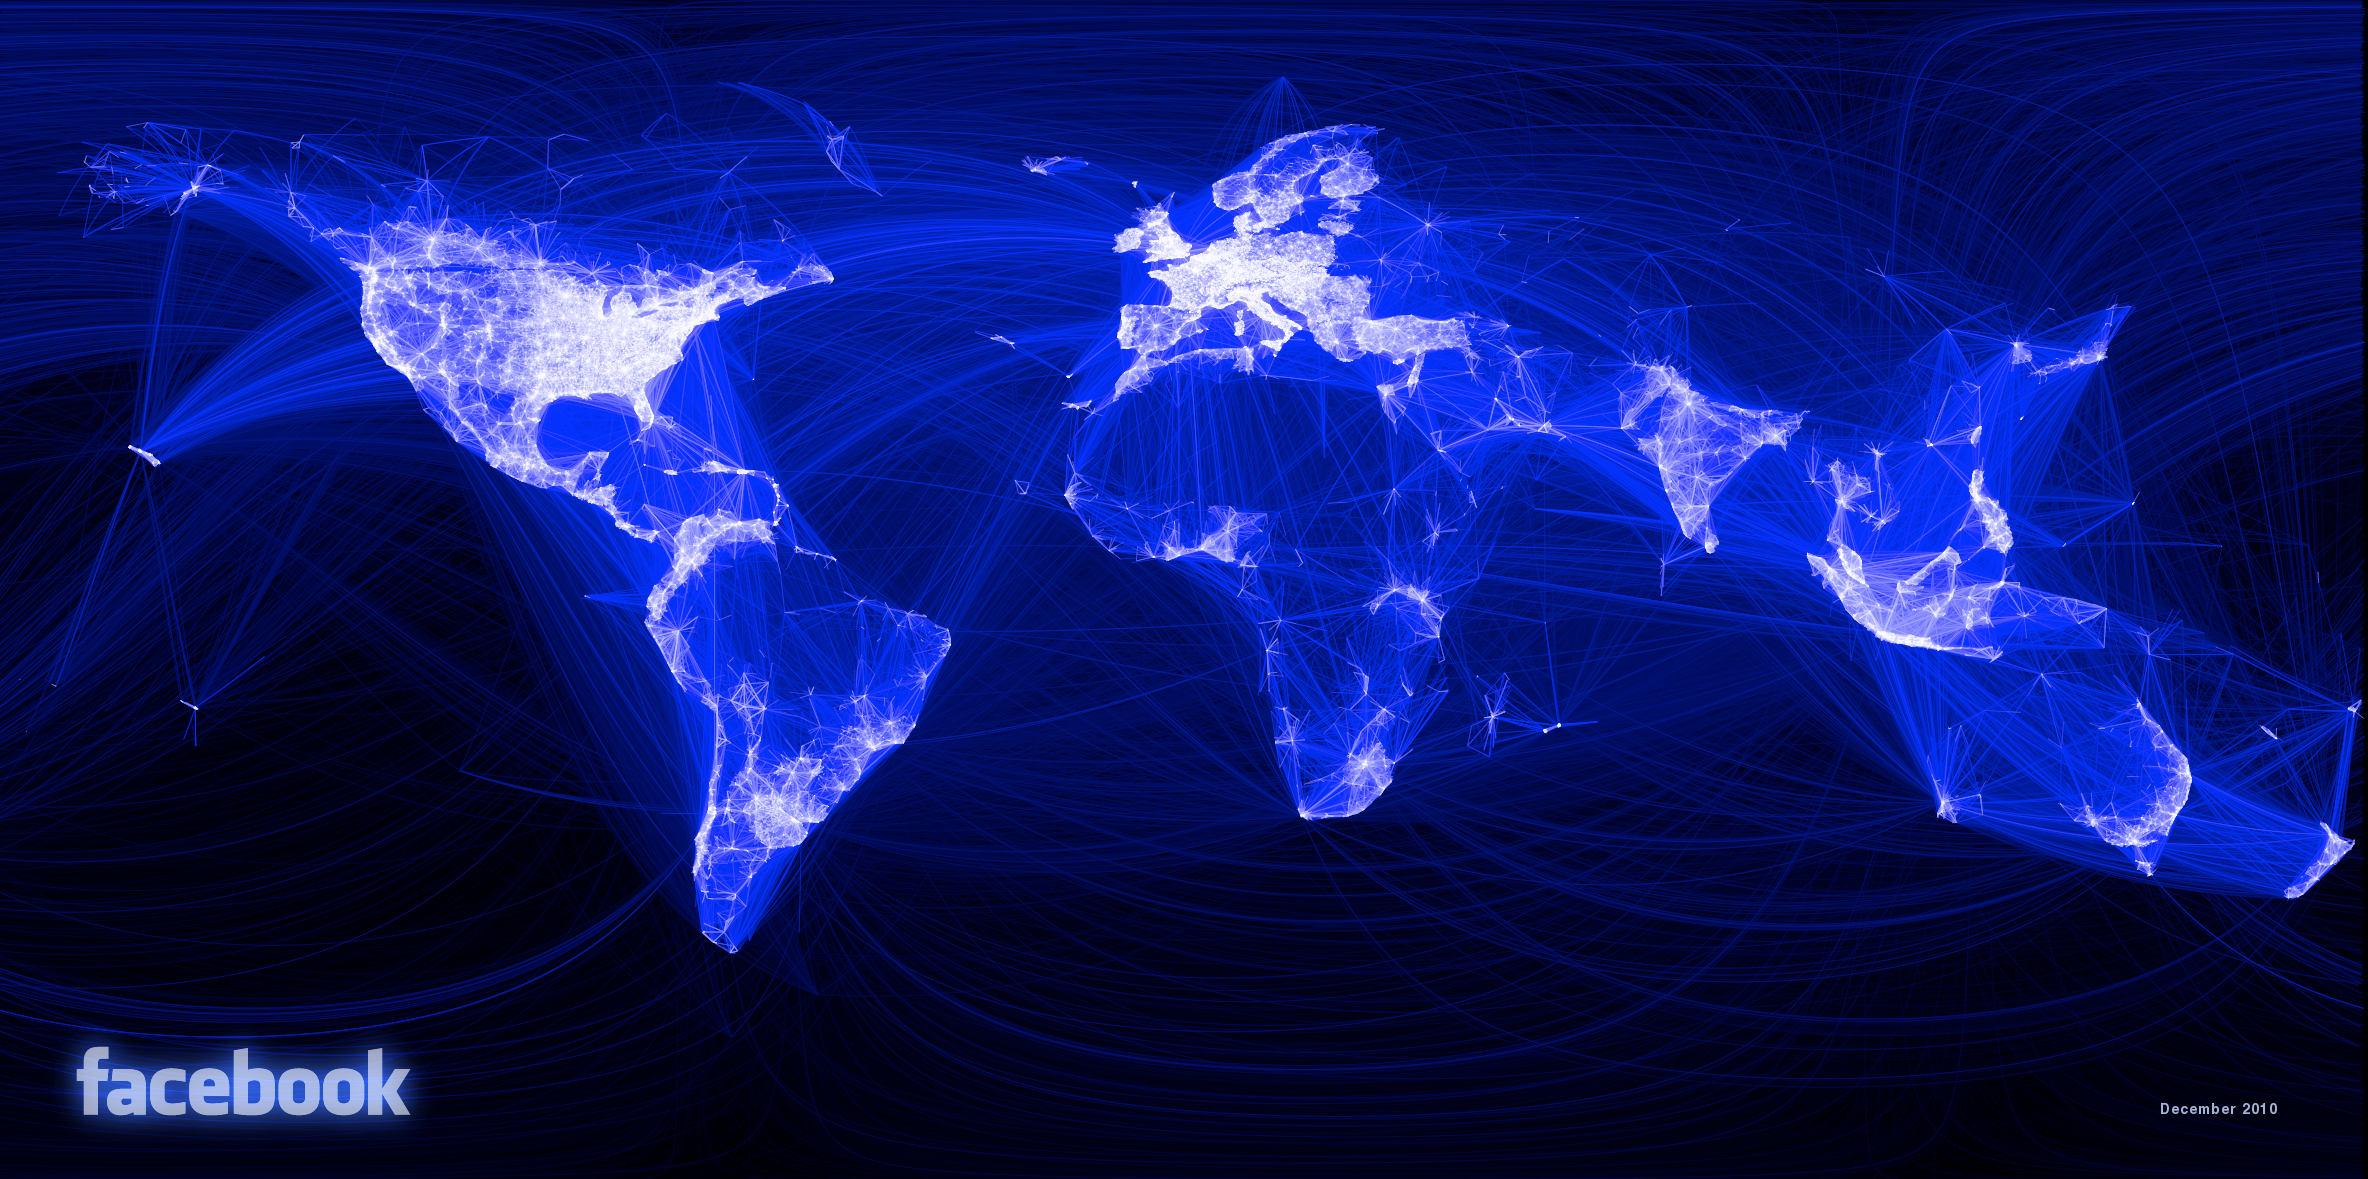 fb relationships full Le monde, géographiquement, vu par les amitiés Facebook VS la NASA